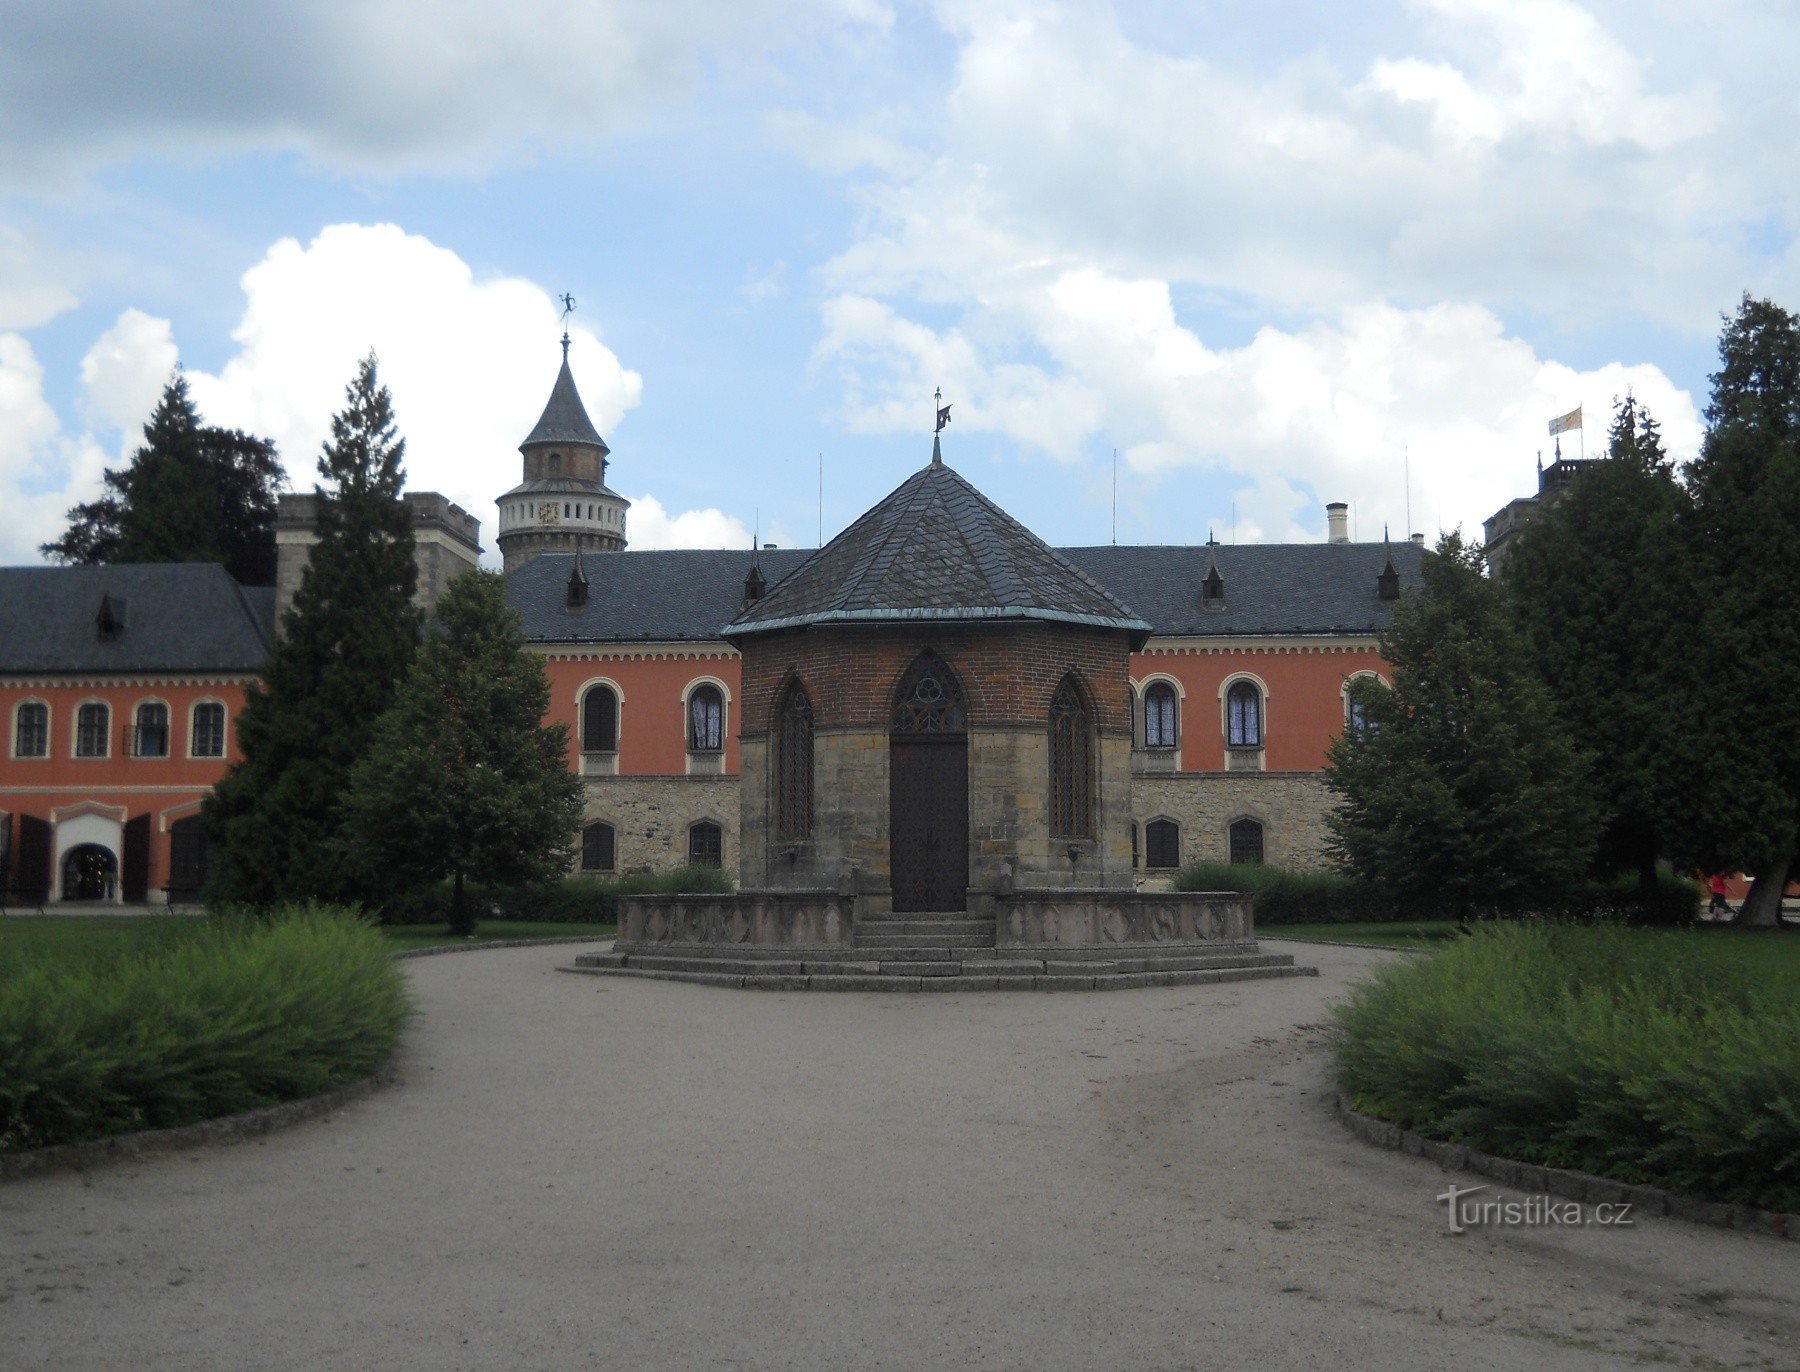 Ehrenhof mit Springbrunnen, mit rundem bretonischem Turm und ganz rechts mit quadratischem österreichischem Turm